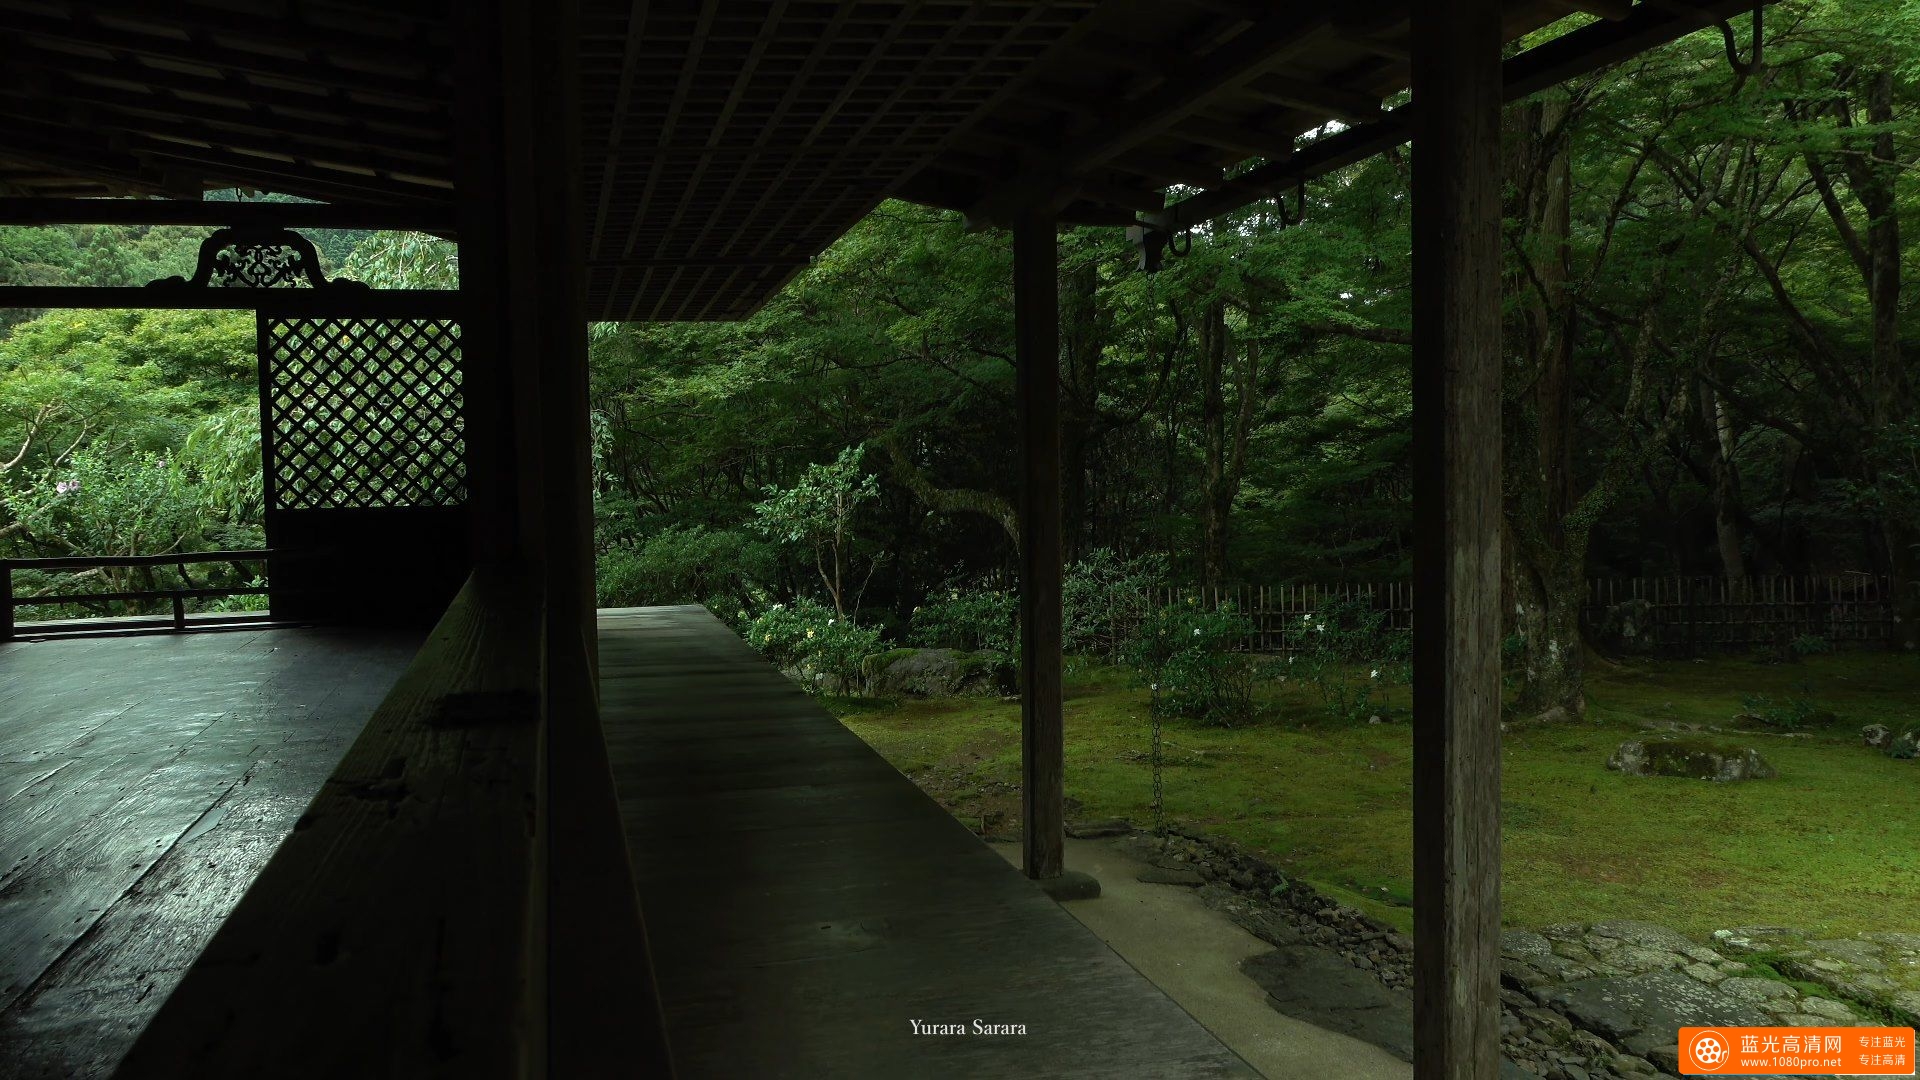 高山寺 京都の庭園　Kozan-ji Temple The Garden of Kyoto Japan-2.jpg